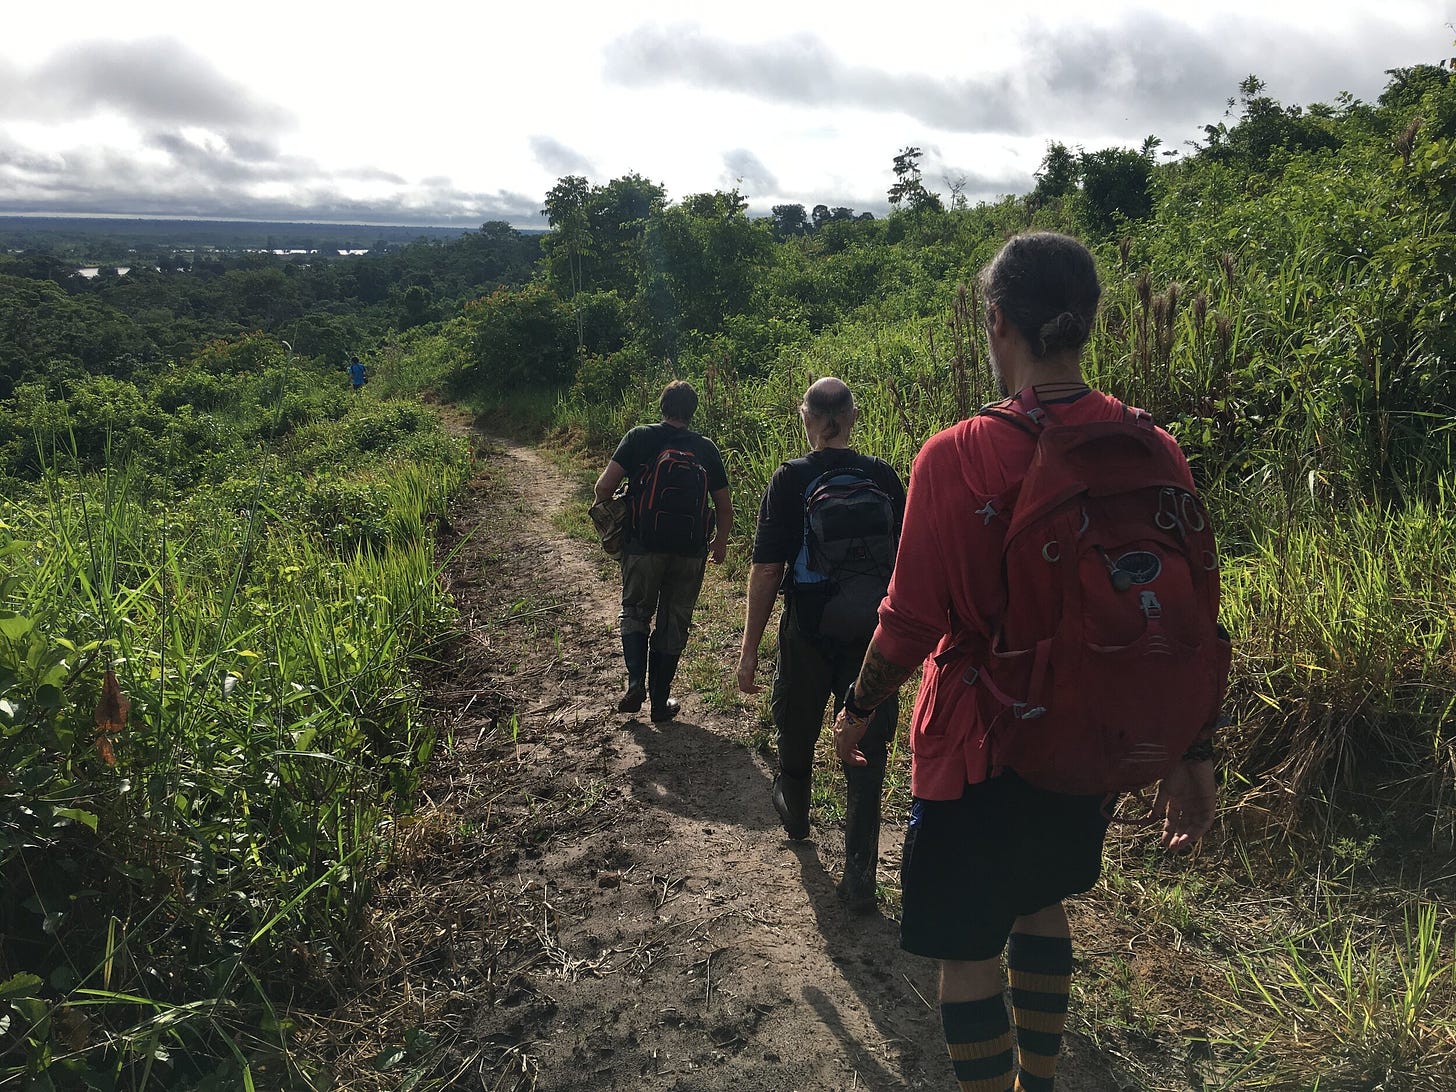 Heading into the jungle, Mayantuyacu, Peru 2019